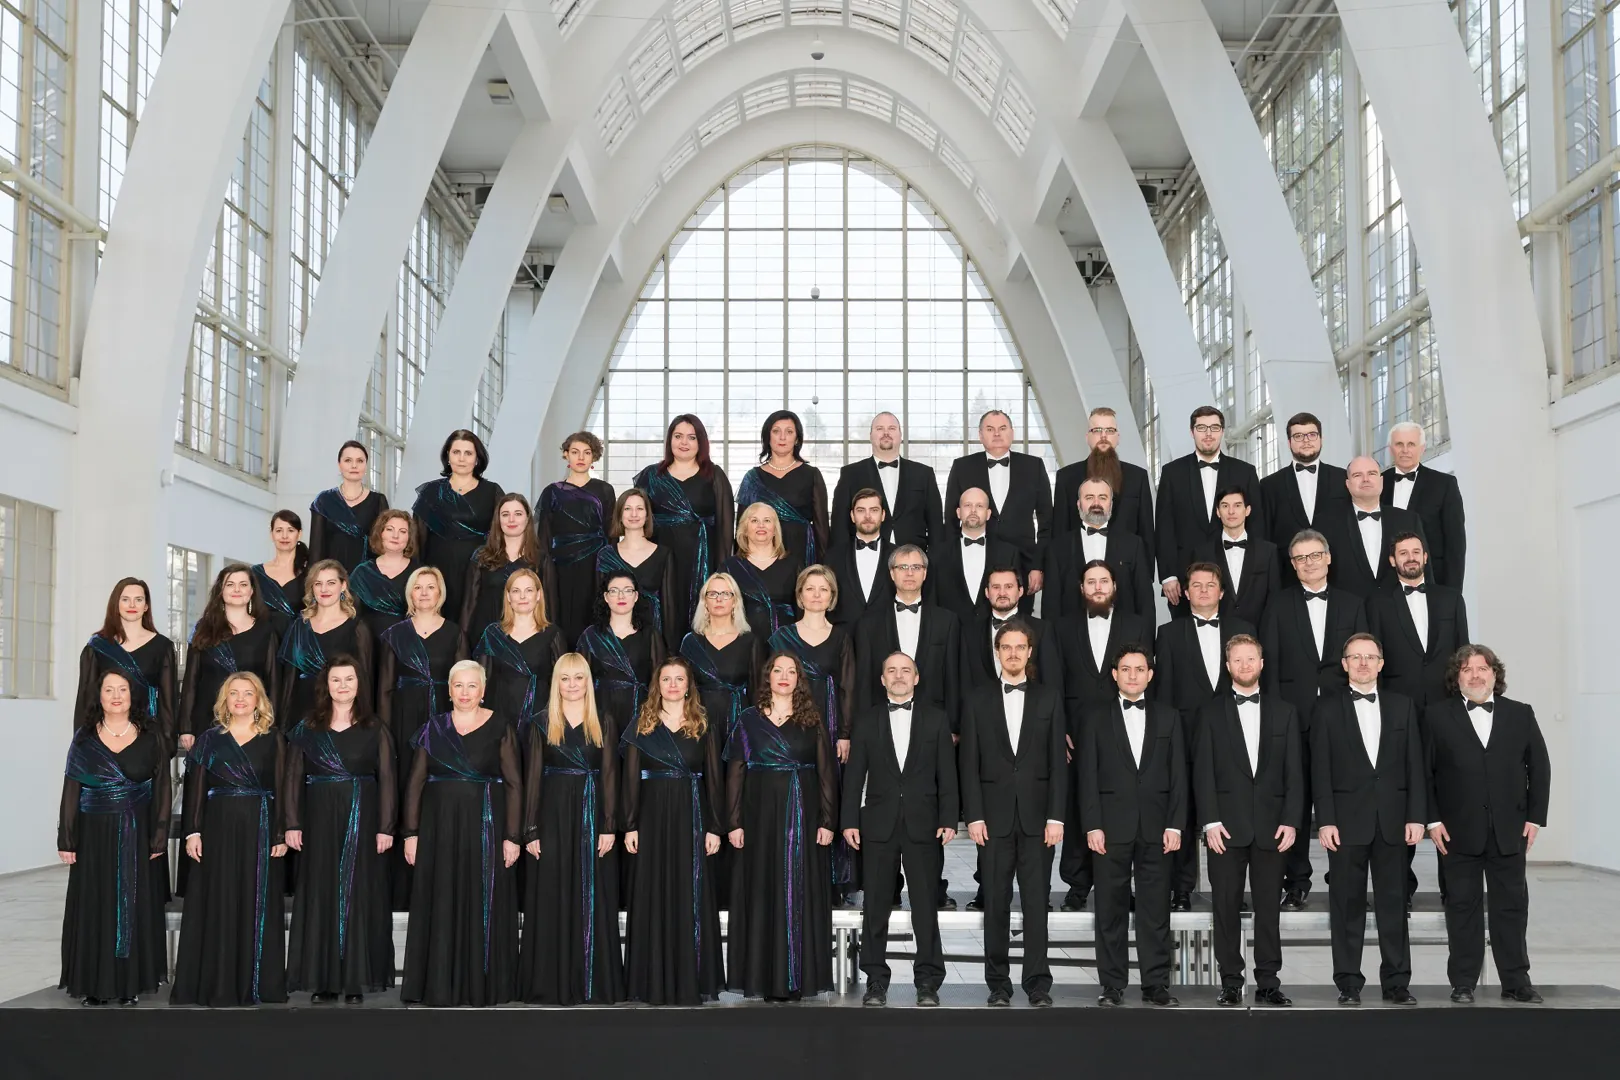 The Czech Philharmonic Choir of Brno